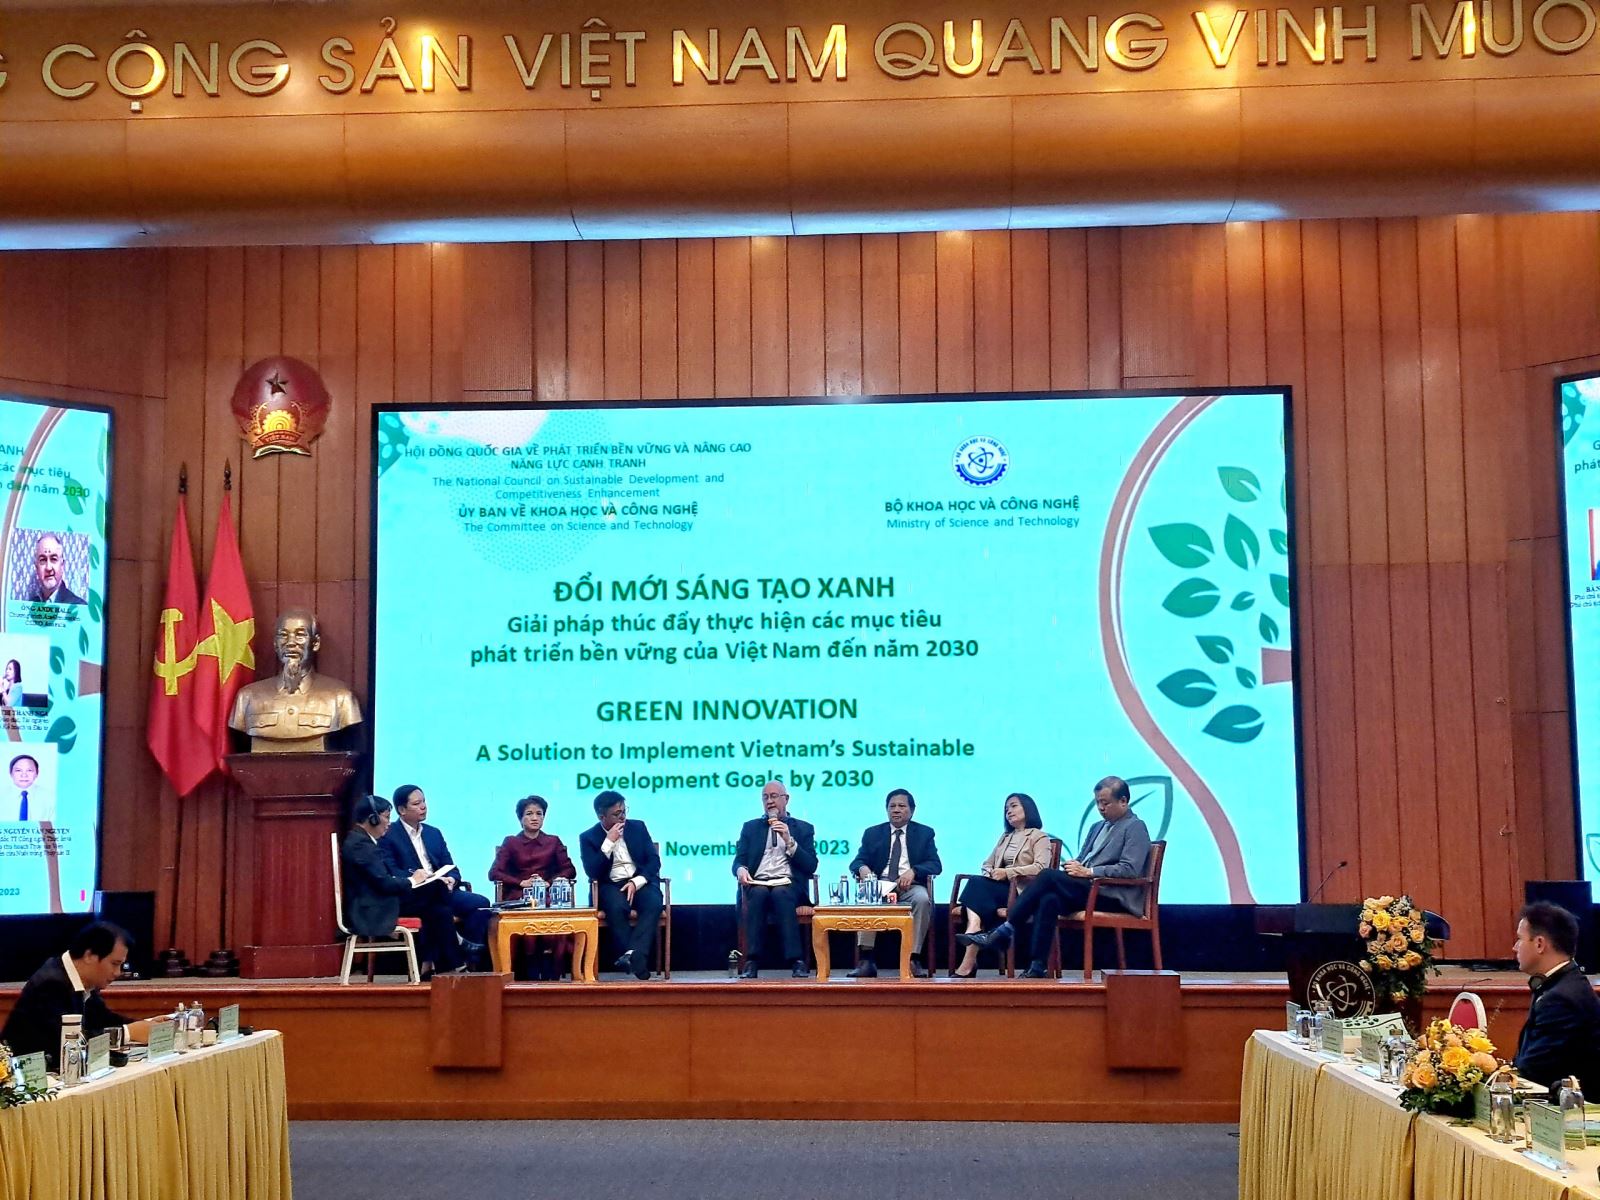 Đổi mới sáng tạo xanh - Giải pháp thúc đẩy các mục tiêu phát triển bền vững của Việt Na